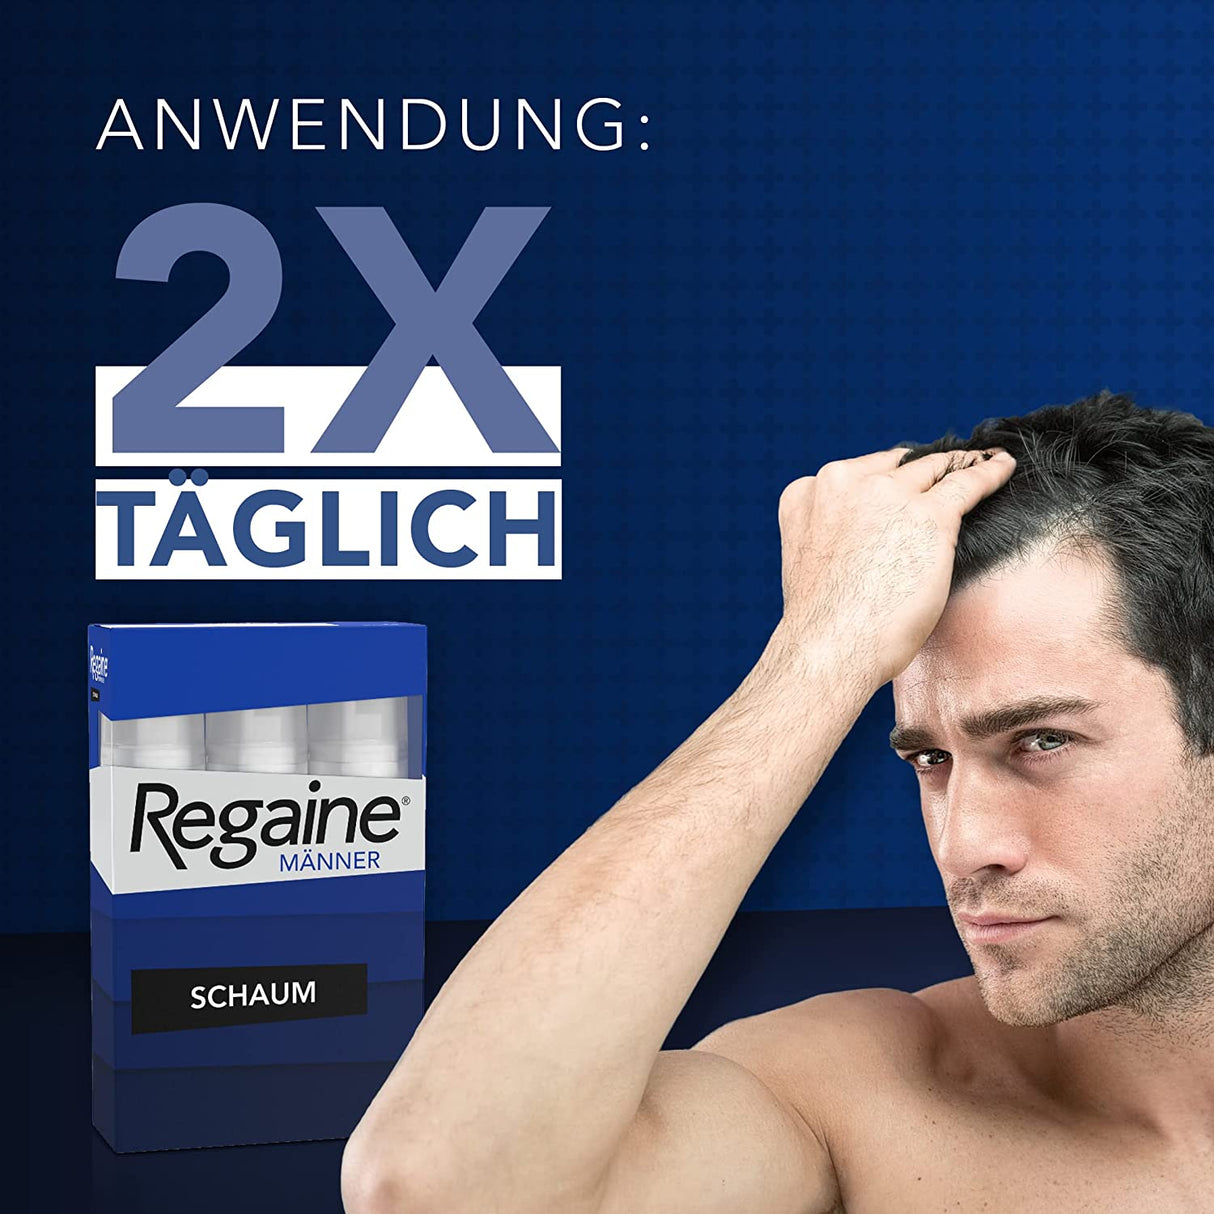 REGAINE Männer Schaum: 3-Monatspackung Mit 50 Mg/G Minoxidil, Stoppt Erblich Bedingten Haarausfall Bei Männern Und Regt Das Haarwachstum An, 3 X 60 G